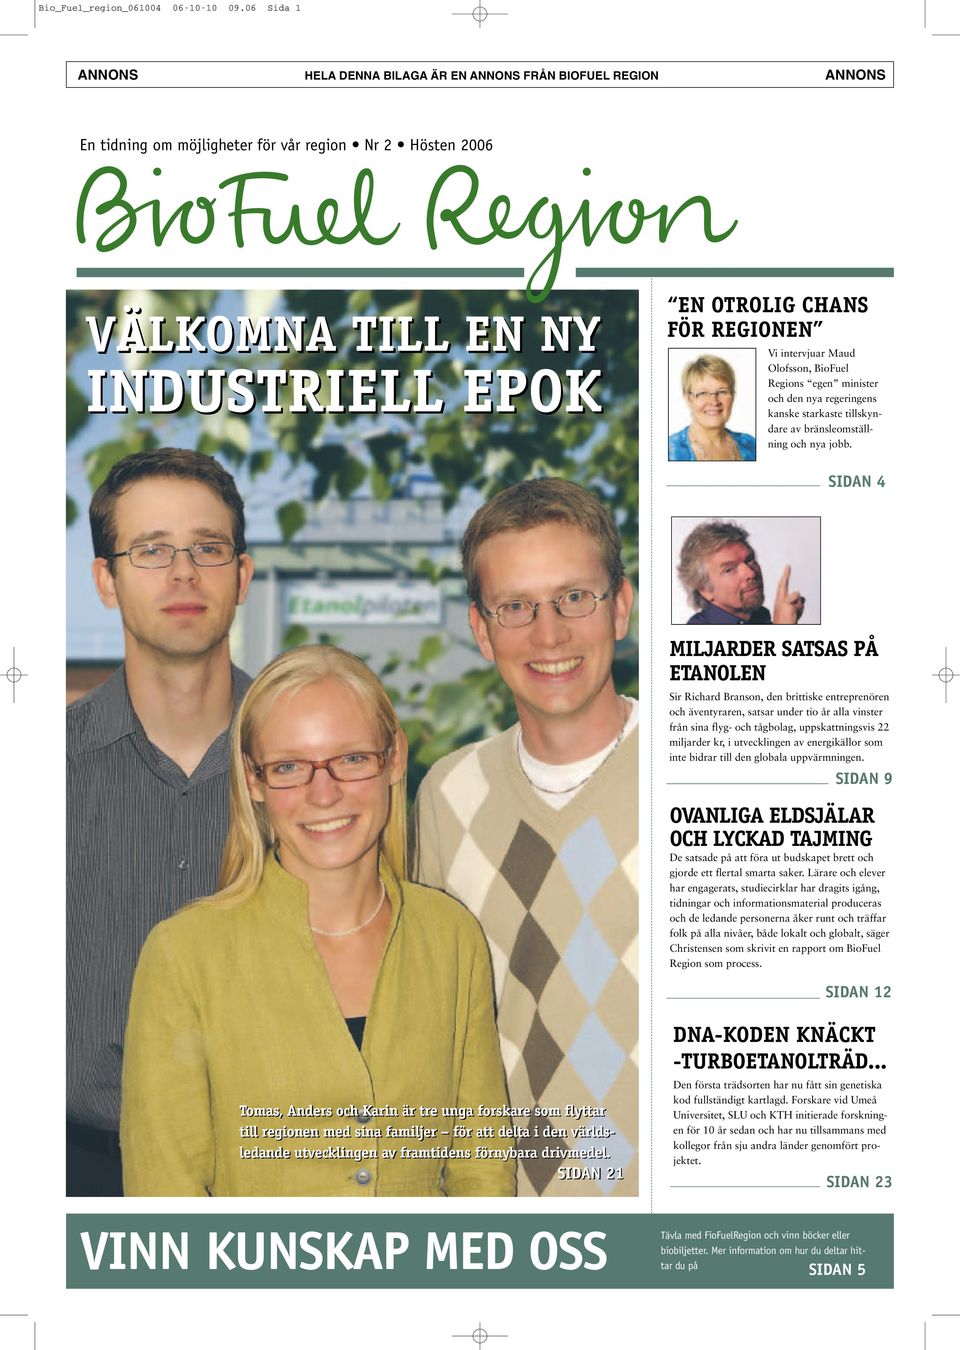 Vi intervjuar Maud Olofsson, BioFuel Regions egen minister och den nya regeringens kanske starkaste tillskyndare av bränsleomställning och nya jobb.